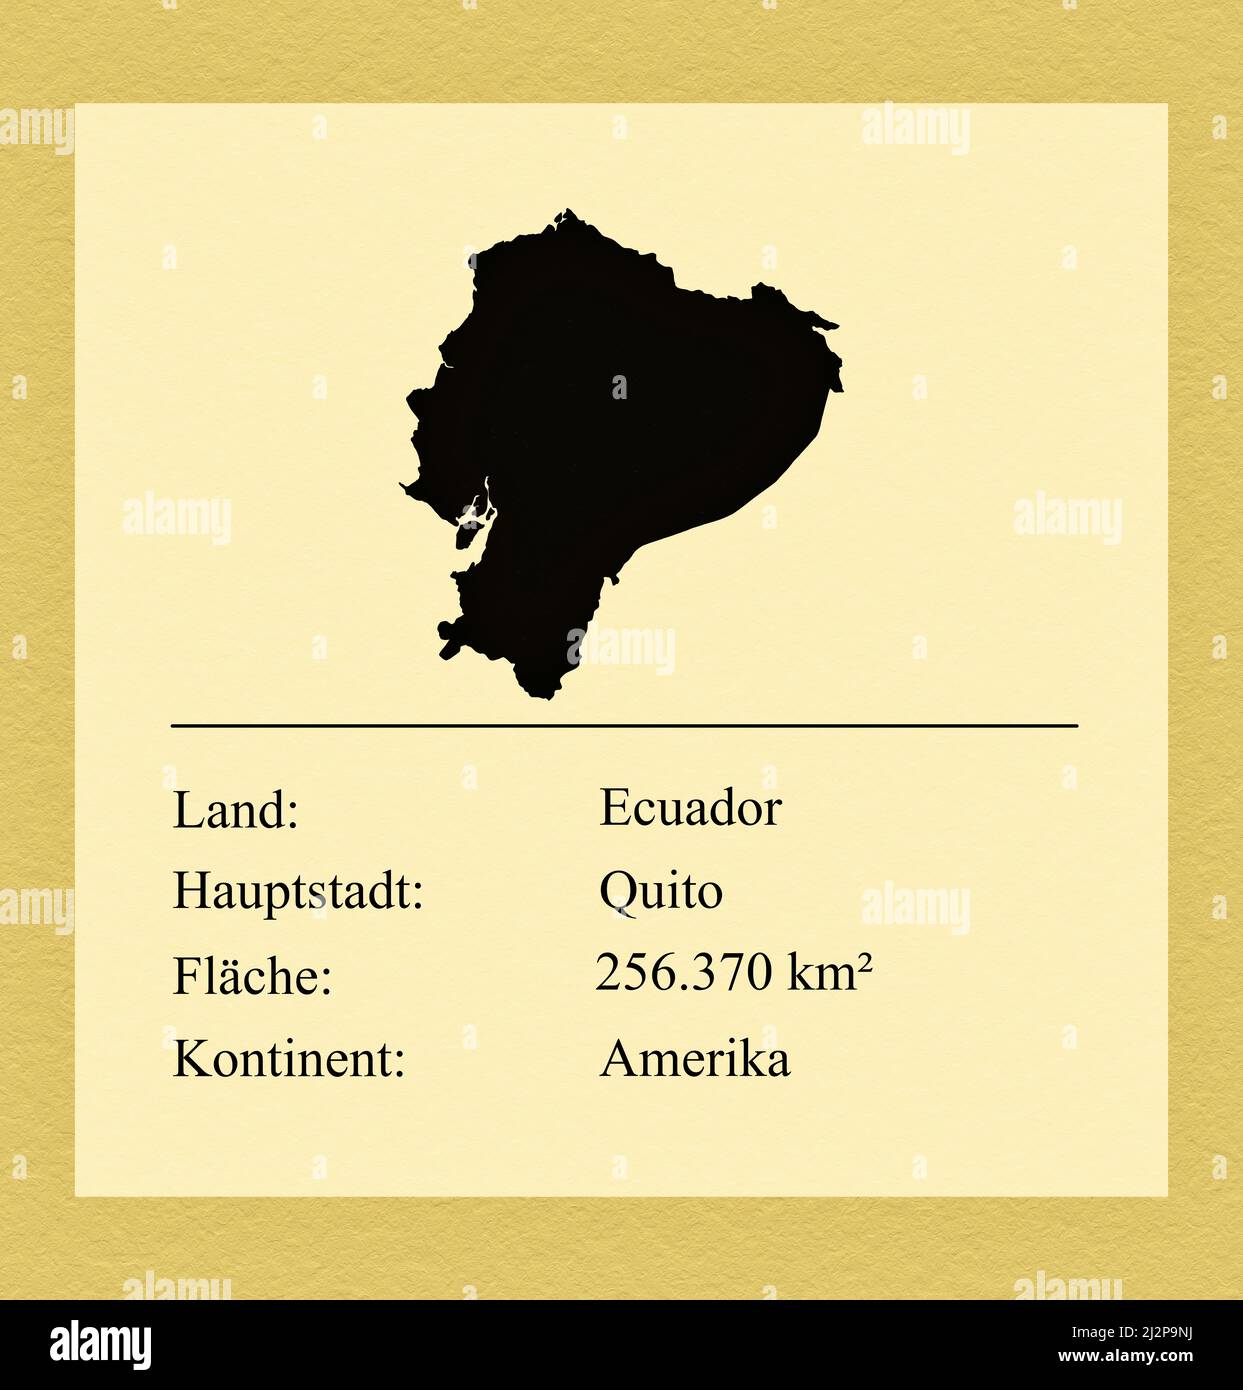 Umrisse des Landes Ecuador, darunter ein kleiner Steckbrief mit Ländernamen, Hauptstadt, Fläche und Kontinent Foto Stock